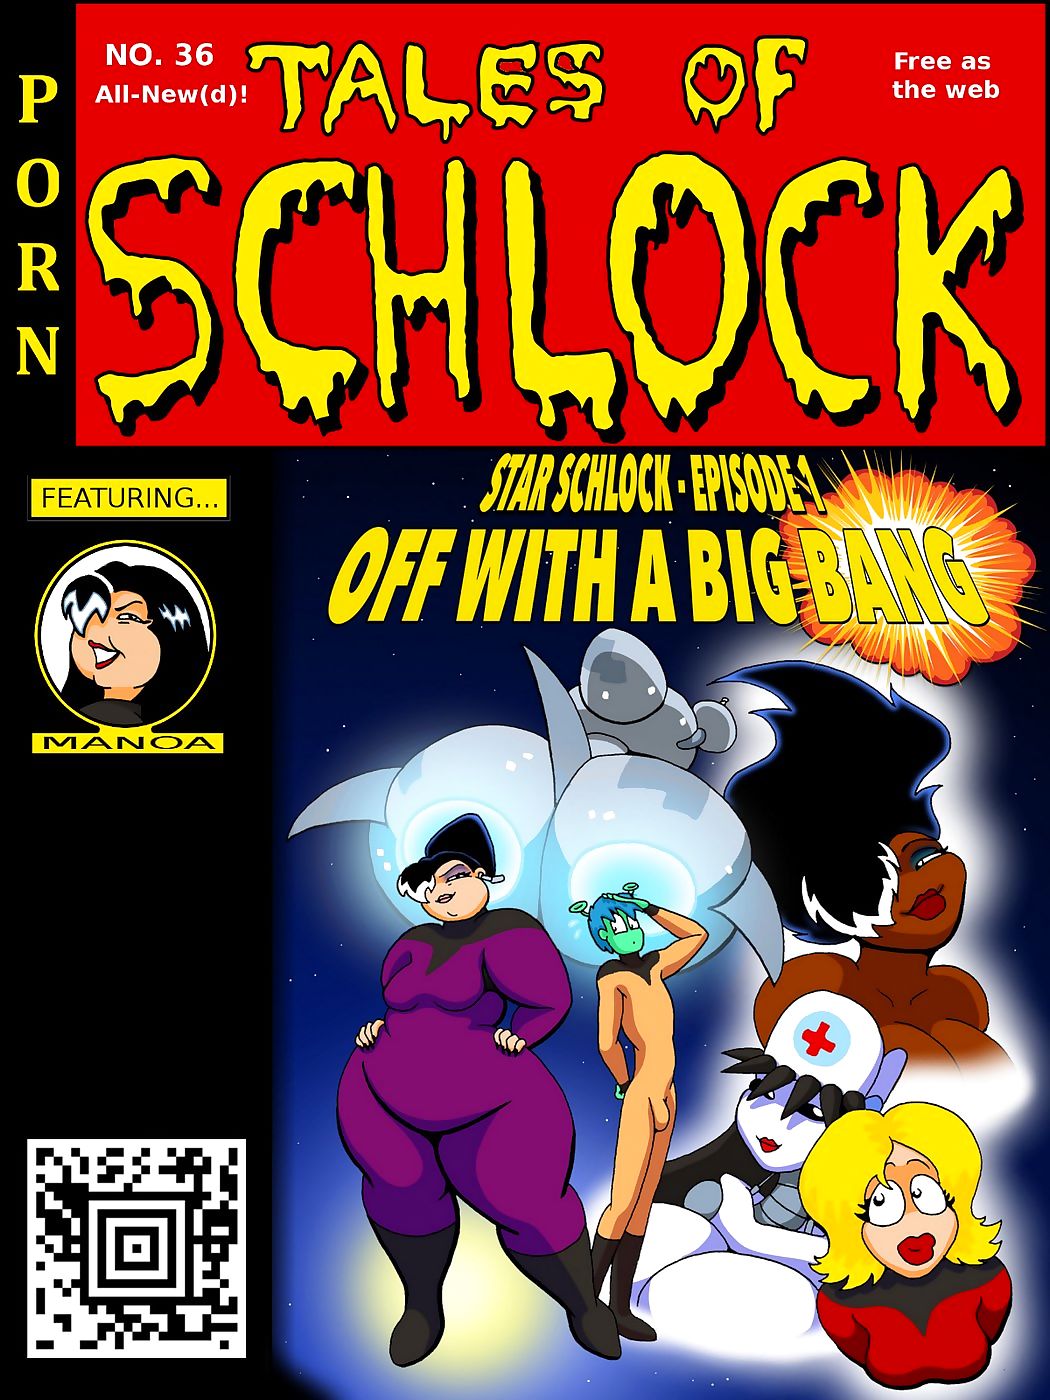 Tales of Schlock #35 – Star Schlock page 1